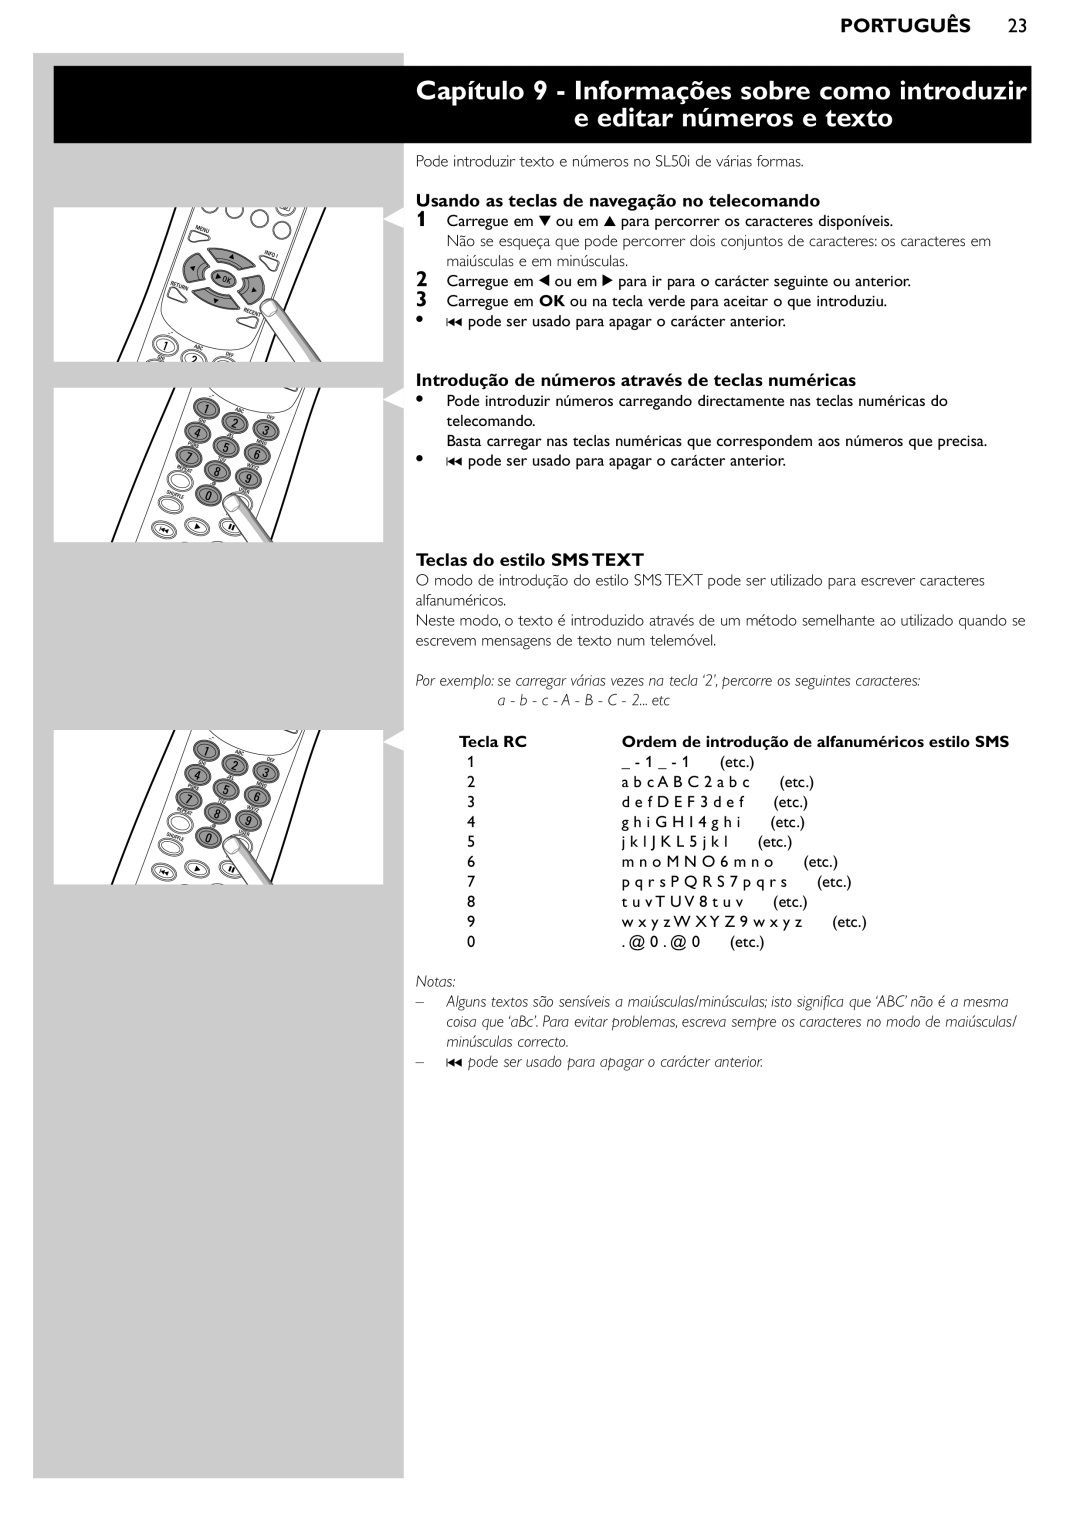 Philips SL50i manual Usando as teclas de navegação no telecomando, Introdução de números através de teclas numéricas 